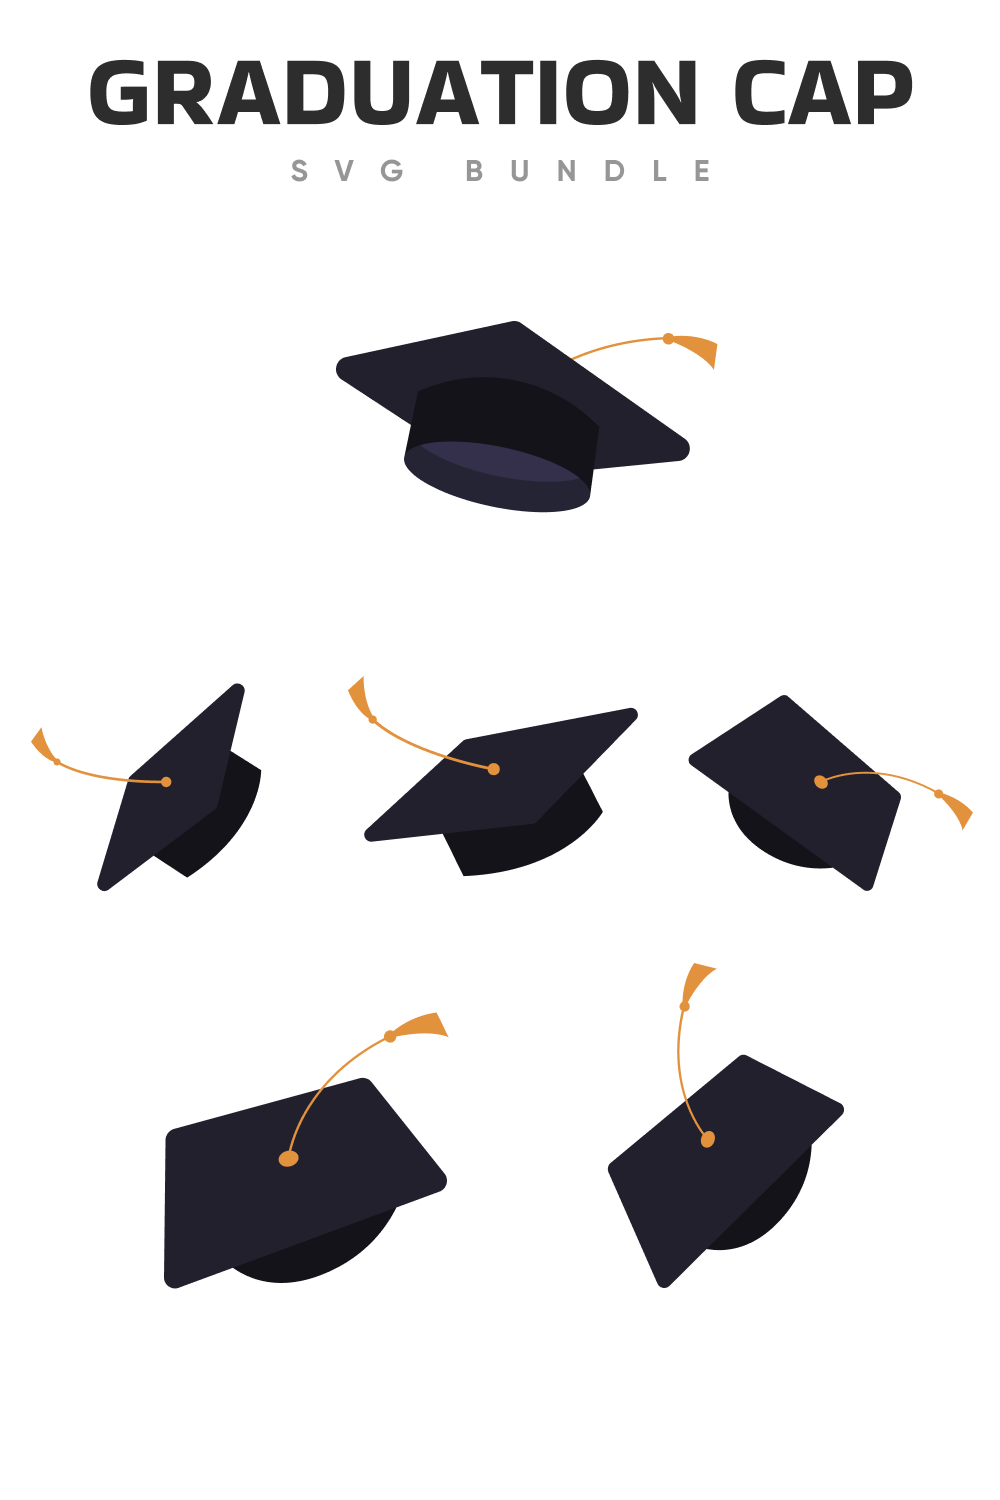 Classic black graduation caps.